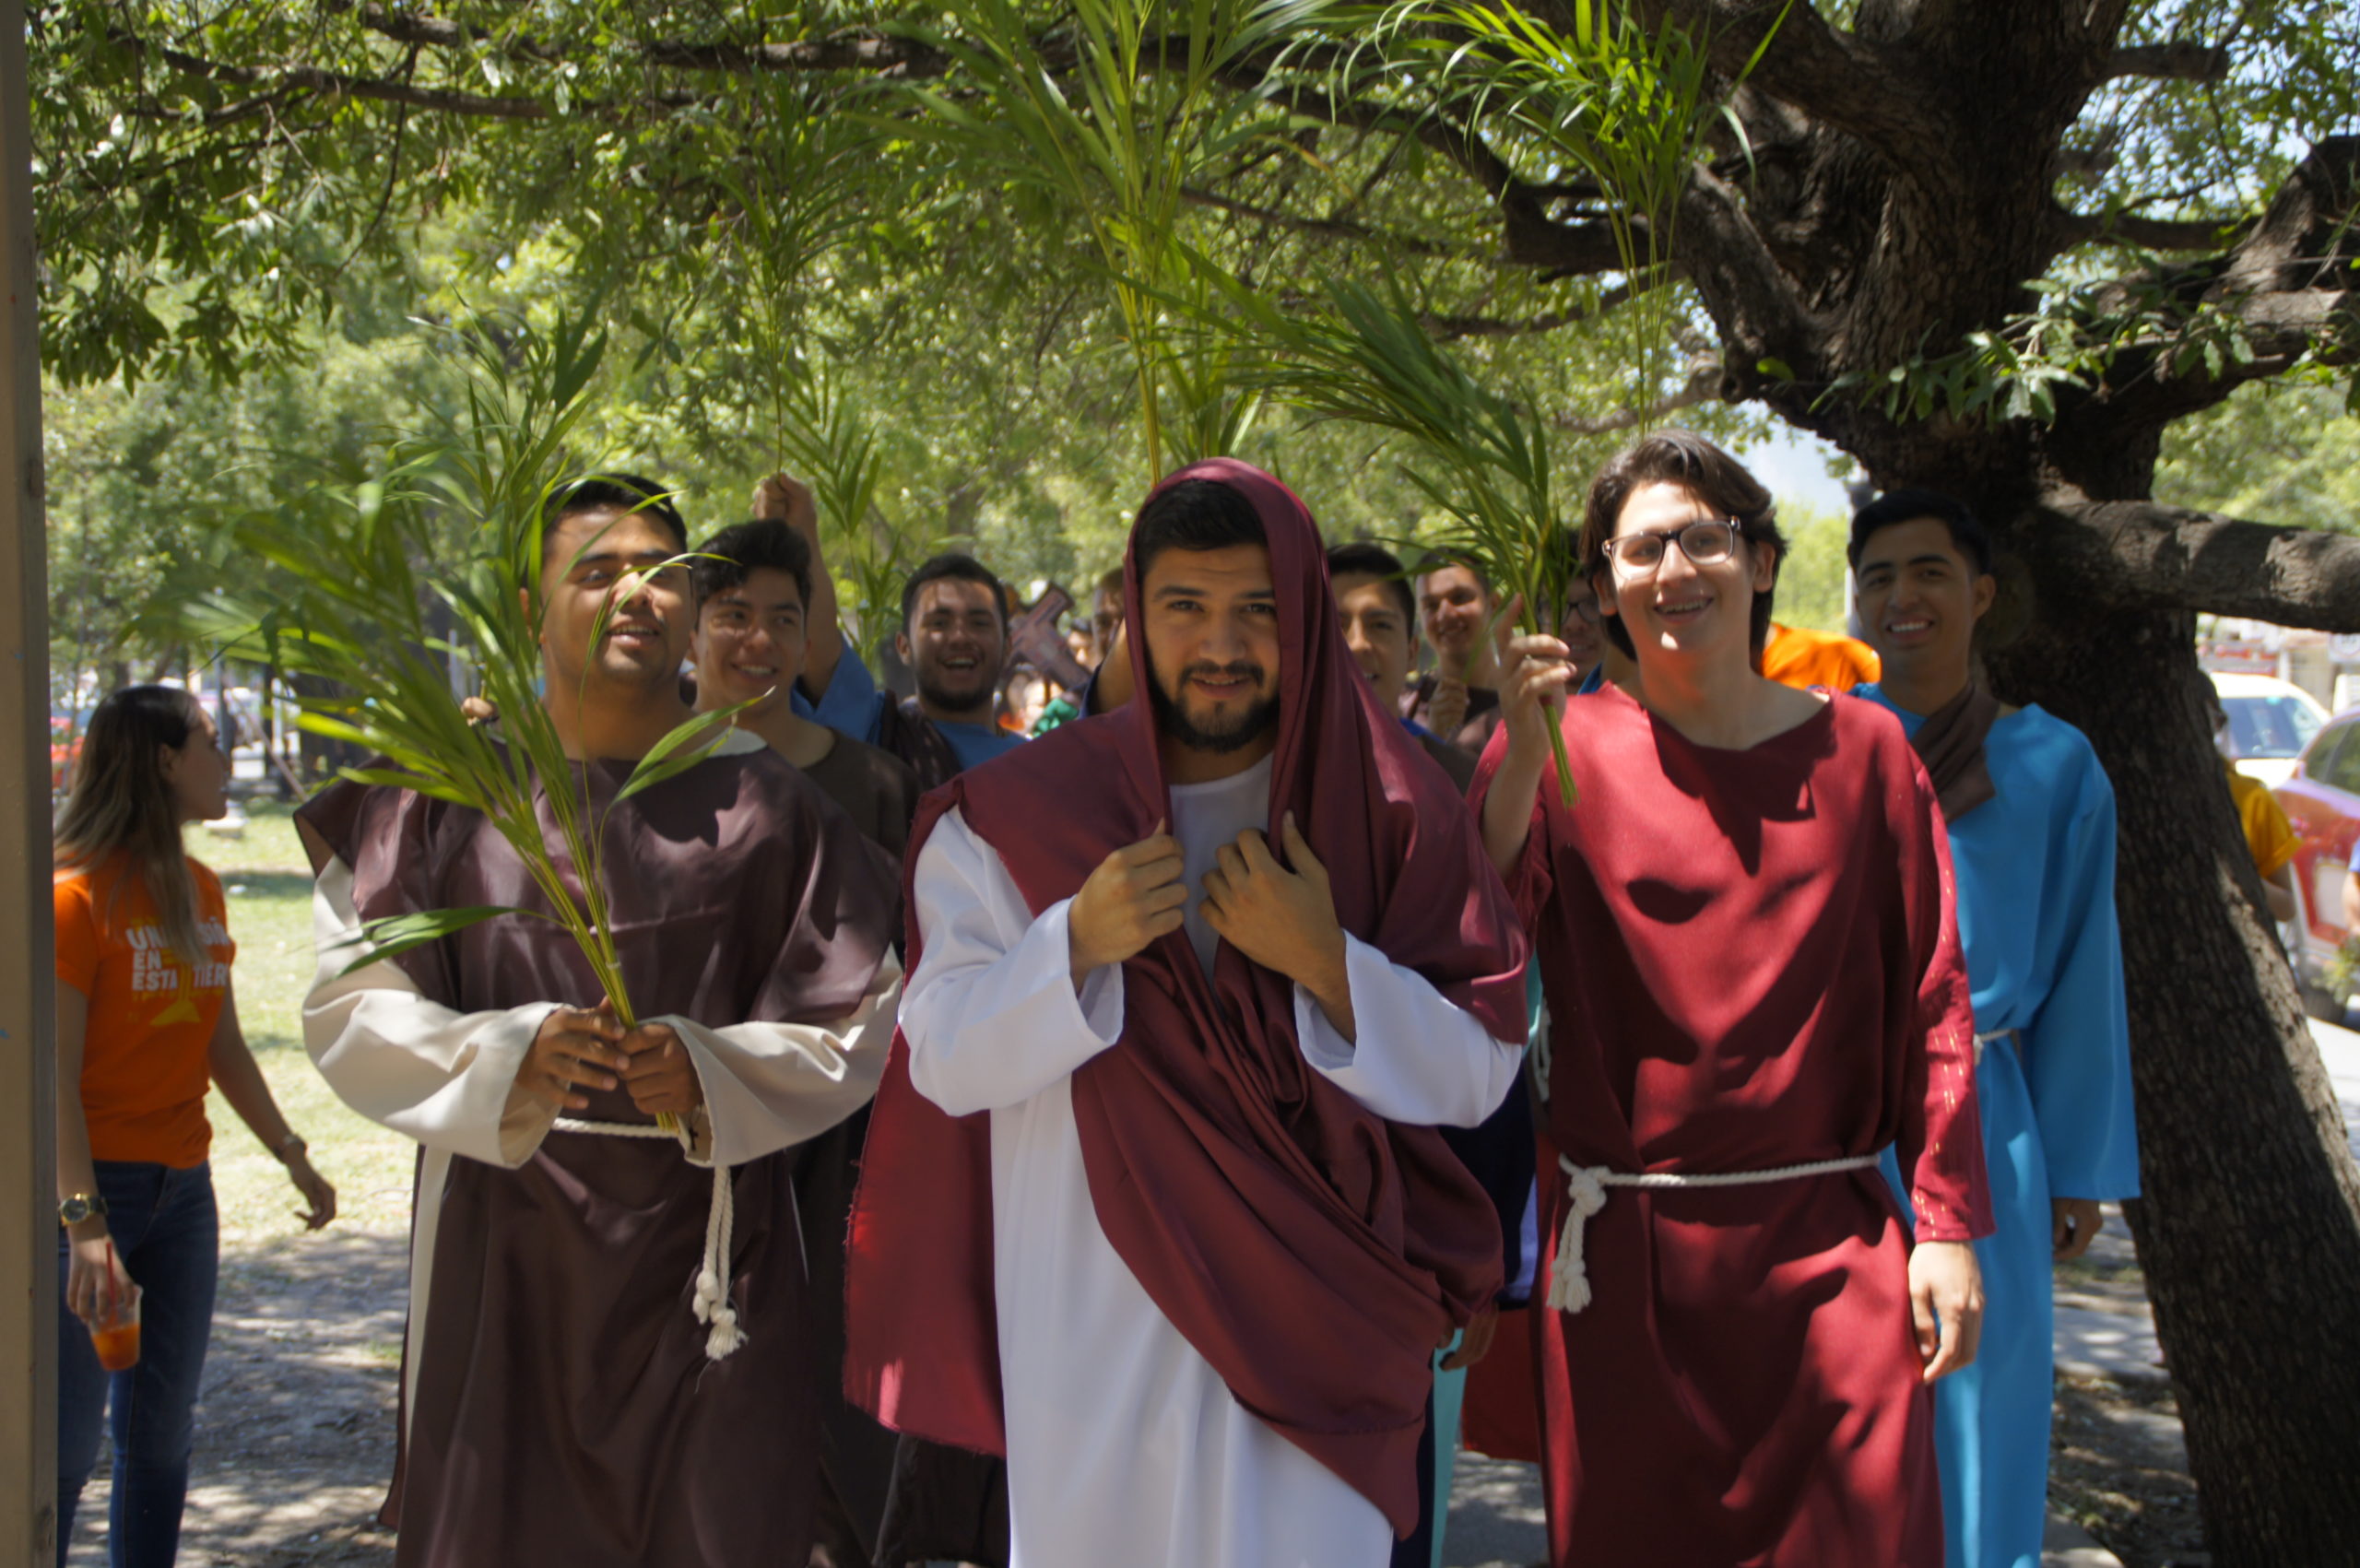 Una de las tradiciones más antiguas en Semana Santa es la procesión del Domingo de Ramos. | Foto: Cathopic.